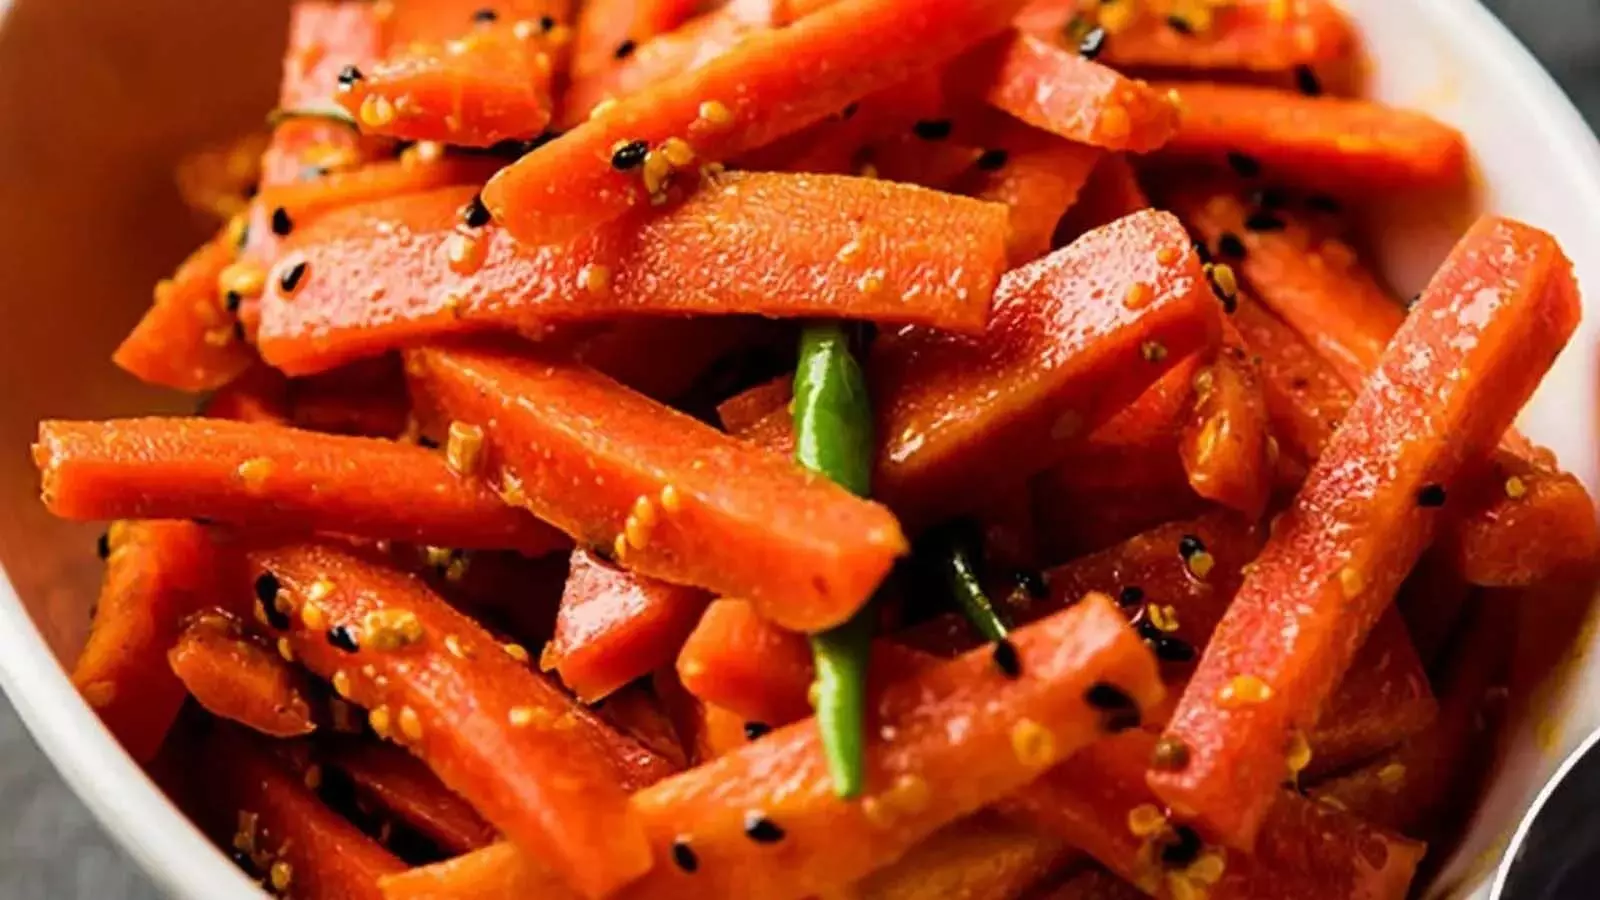 Recipe: जाने गाजर का अचार बनाने का तरीका और सामग्री